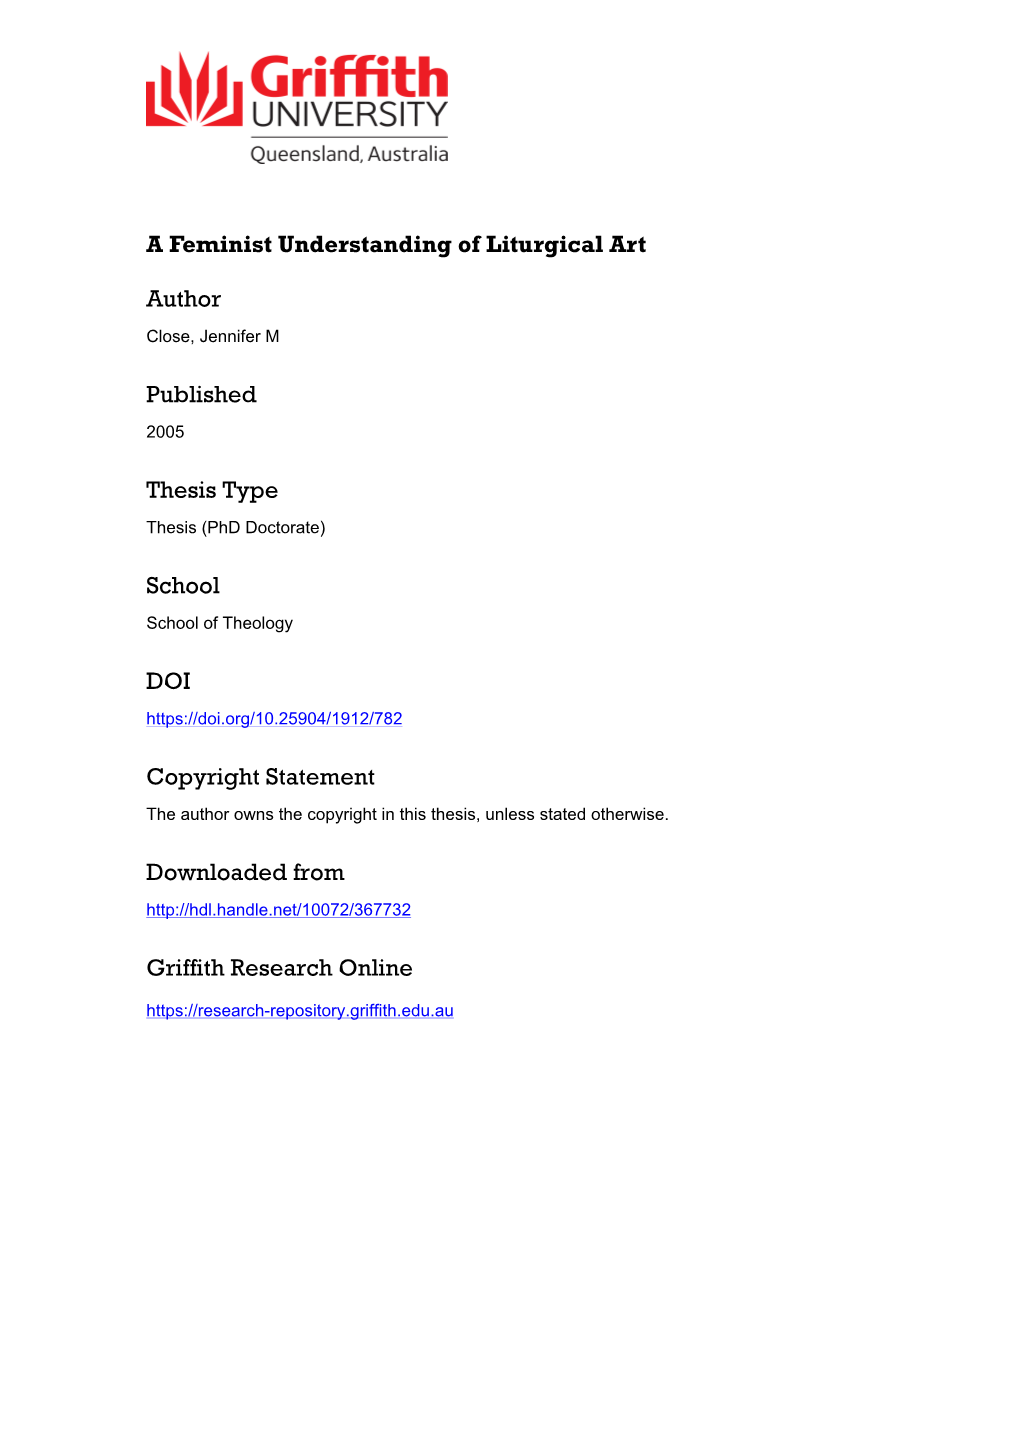 2. a Feminist Approach to Liturgical Art: a Conceptual Framework